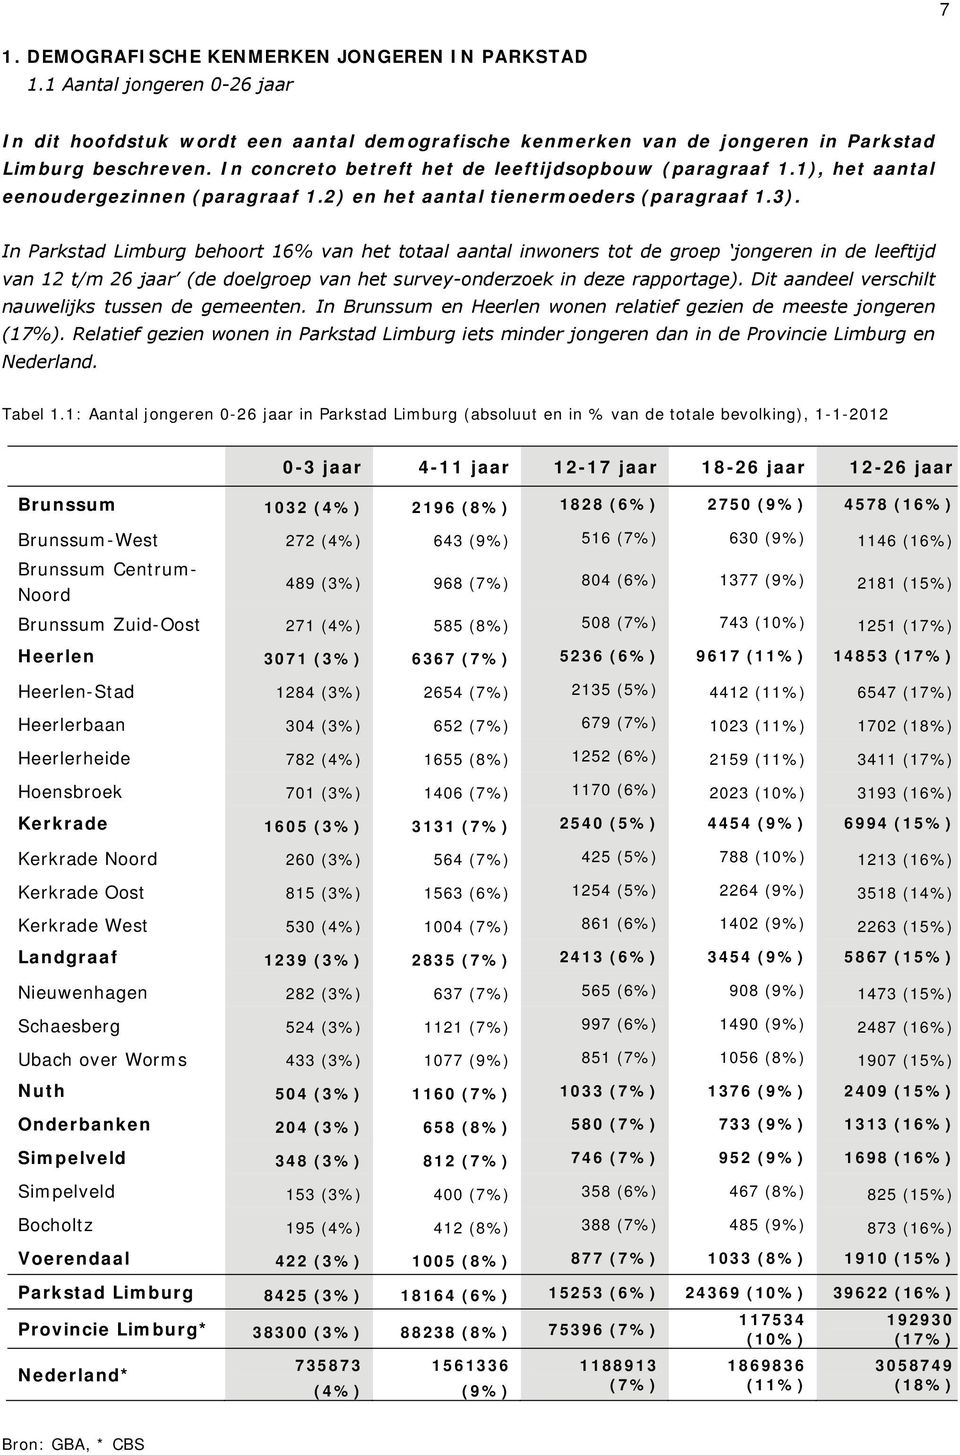 In Parkstad Limburg behoort 16% van het totaal aantal inwoners tot de groep jongeren in de leeftijd van 12 t/m 26 jaar (de doelgroep van het survey-onderzoek in deze rapportage).